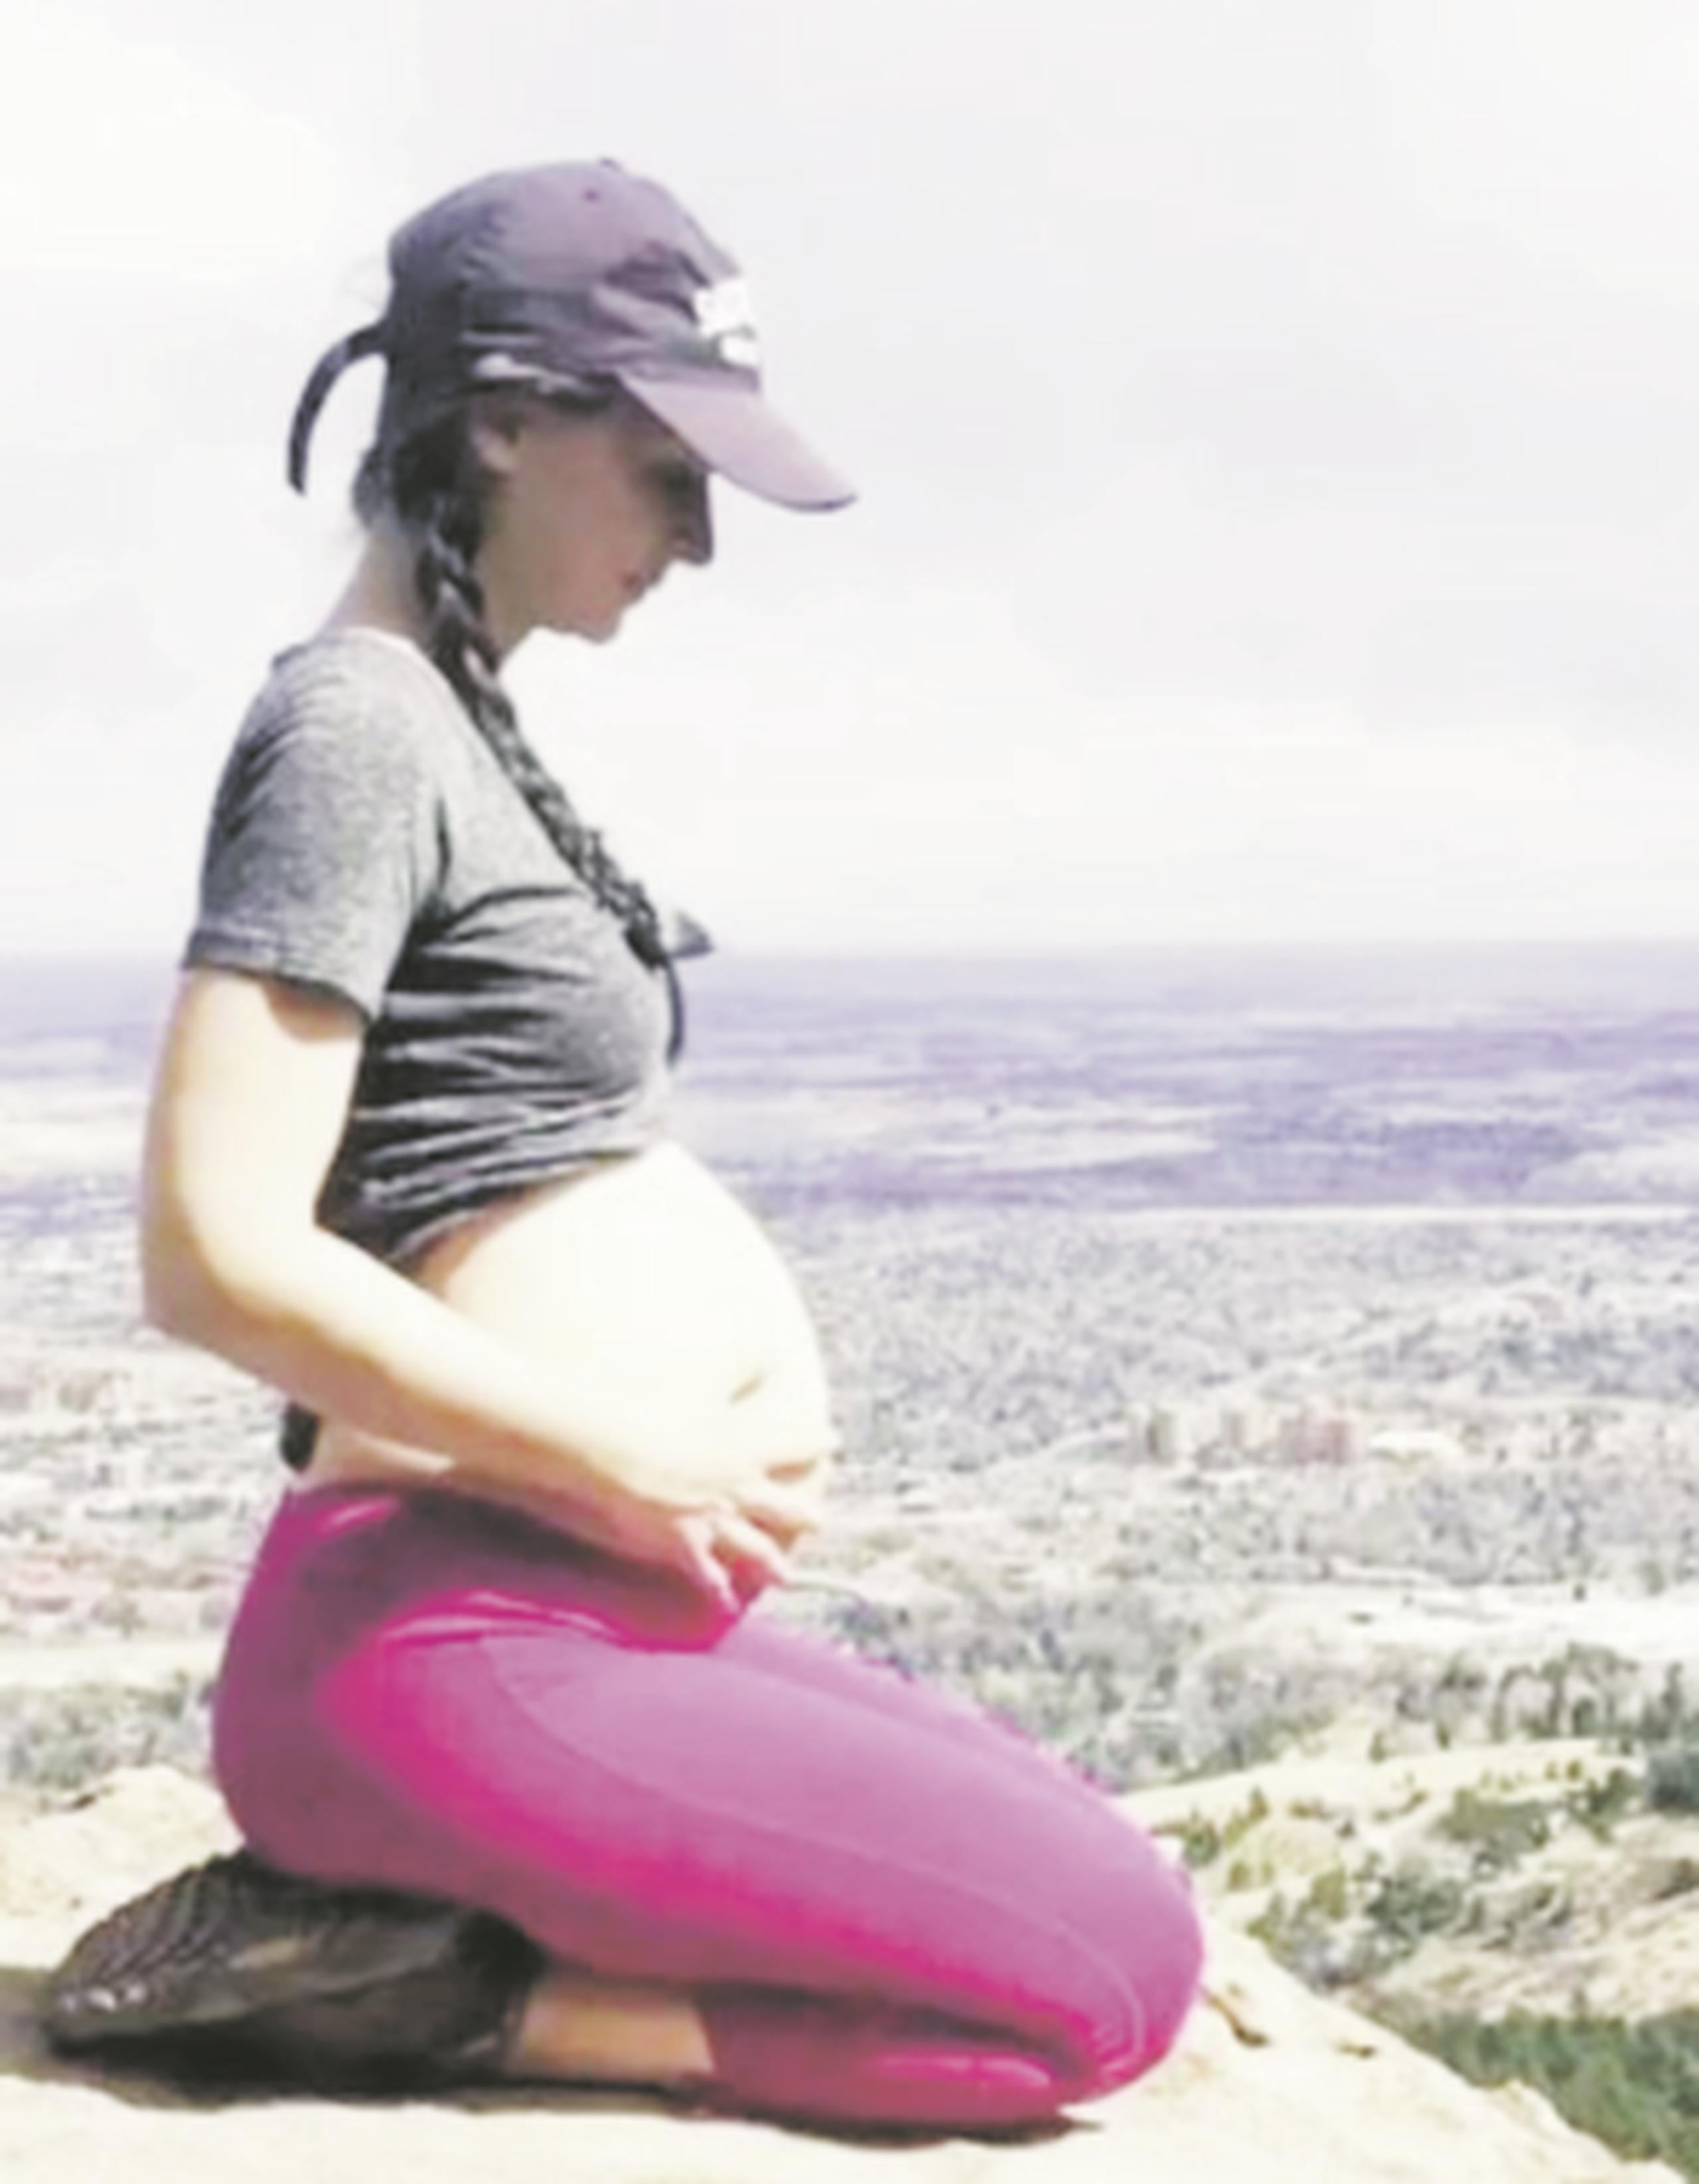 La creadora del método Bloom y el “belly pumping”, Brooke Cates (de Colorado, Estados Unidos), asegura que este ejercicio del vientre no es dañino para el niño que está por nacer. (Archivo)